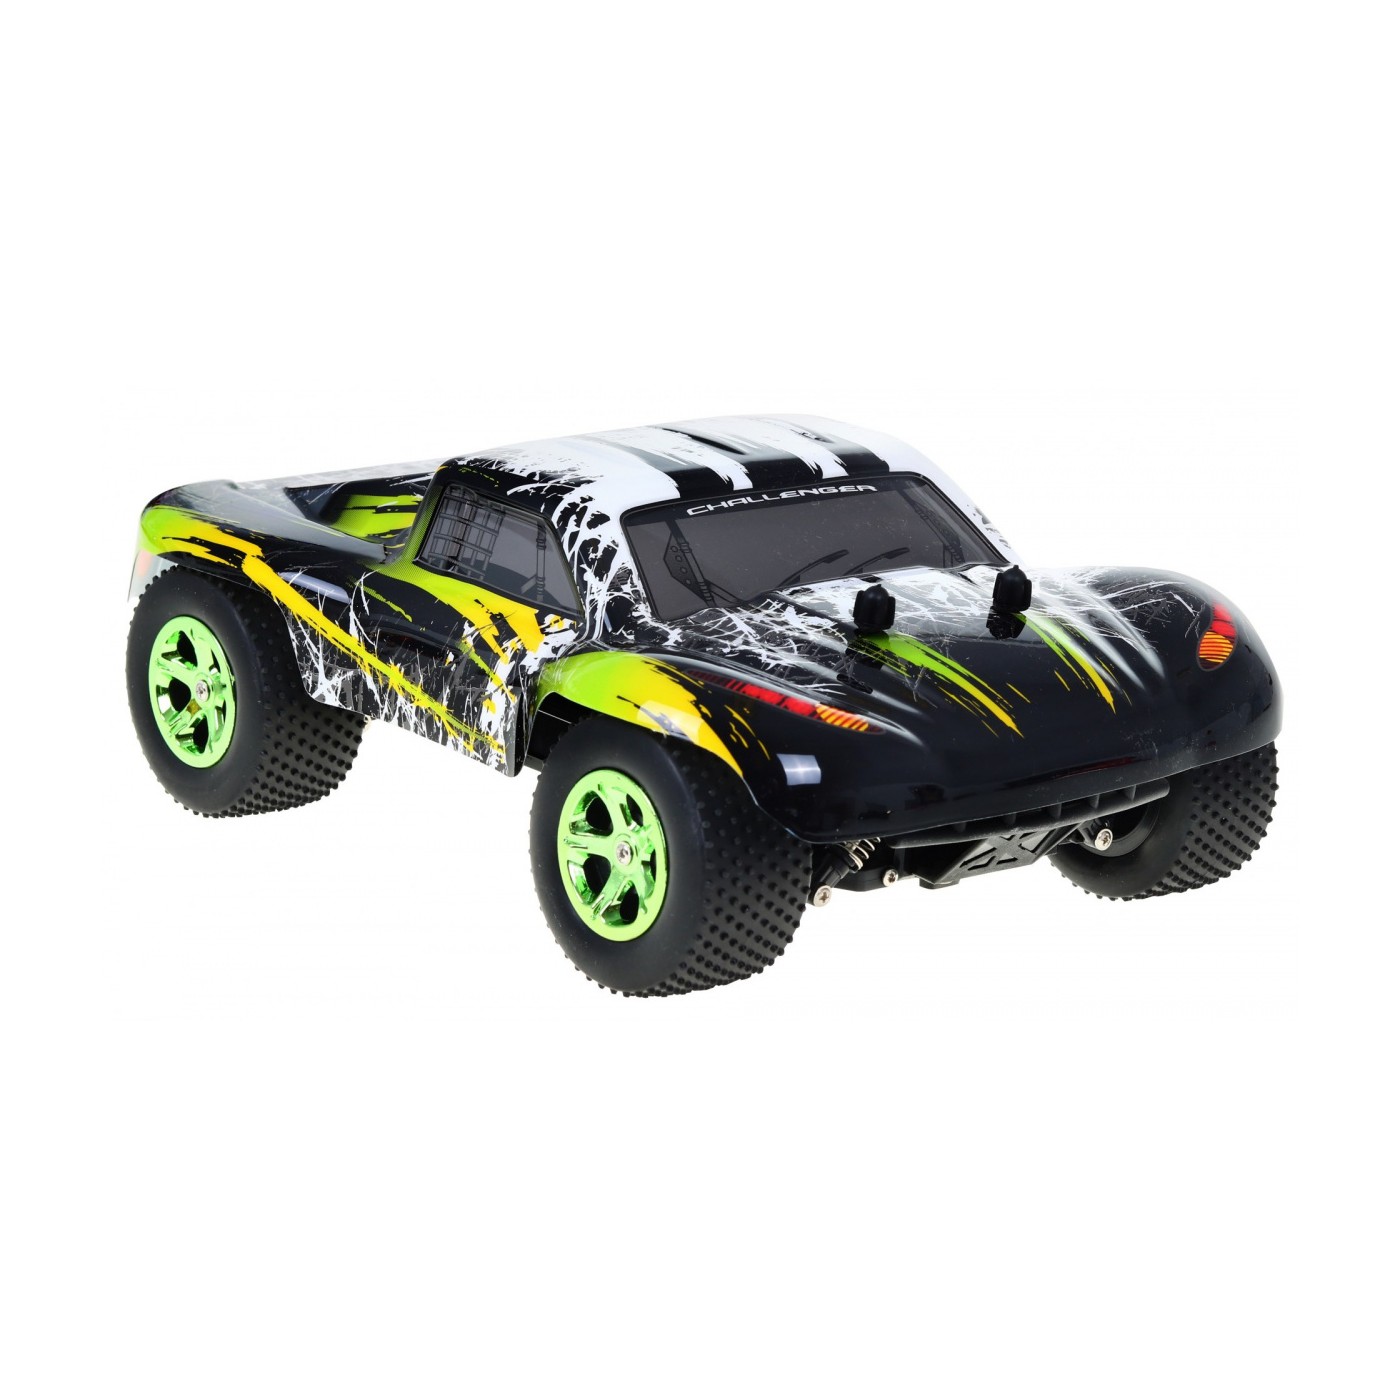 R C toy car 8807G Green